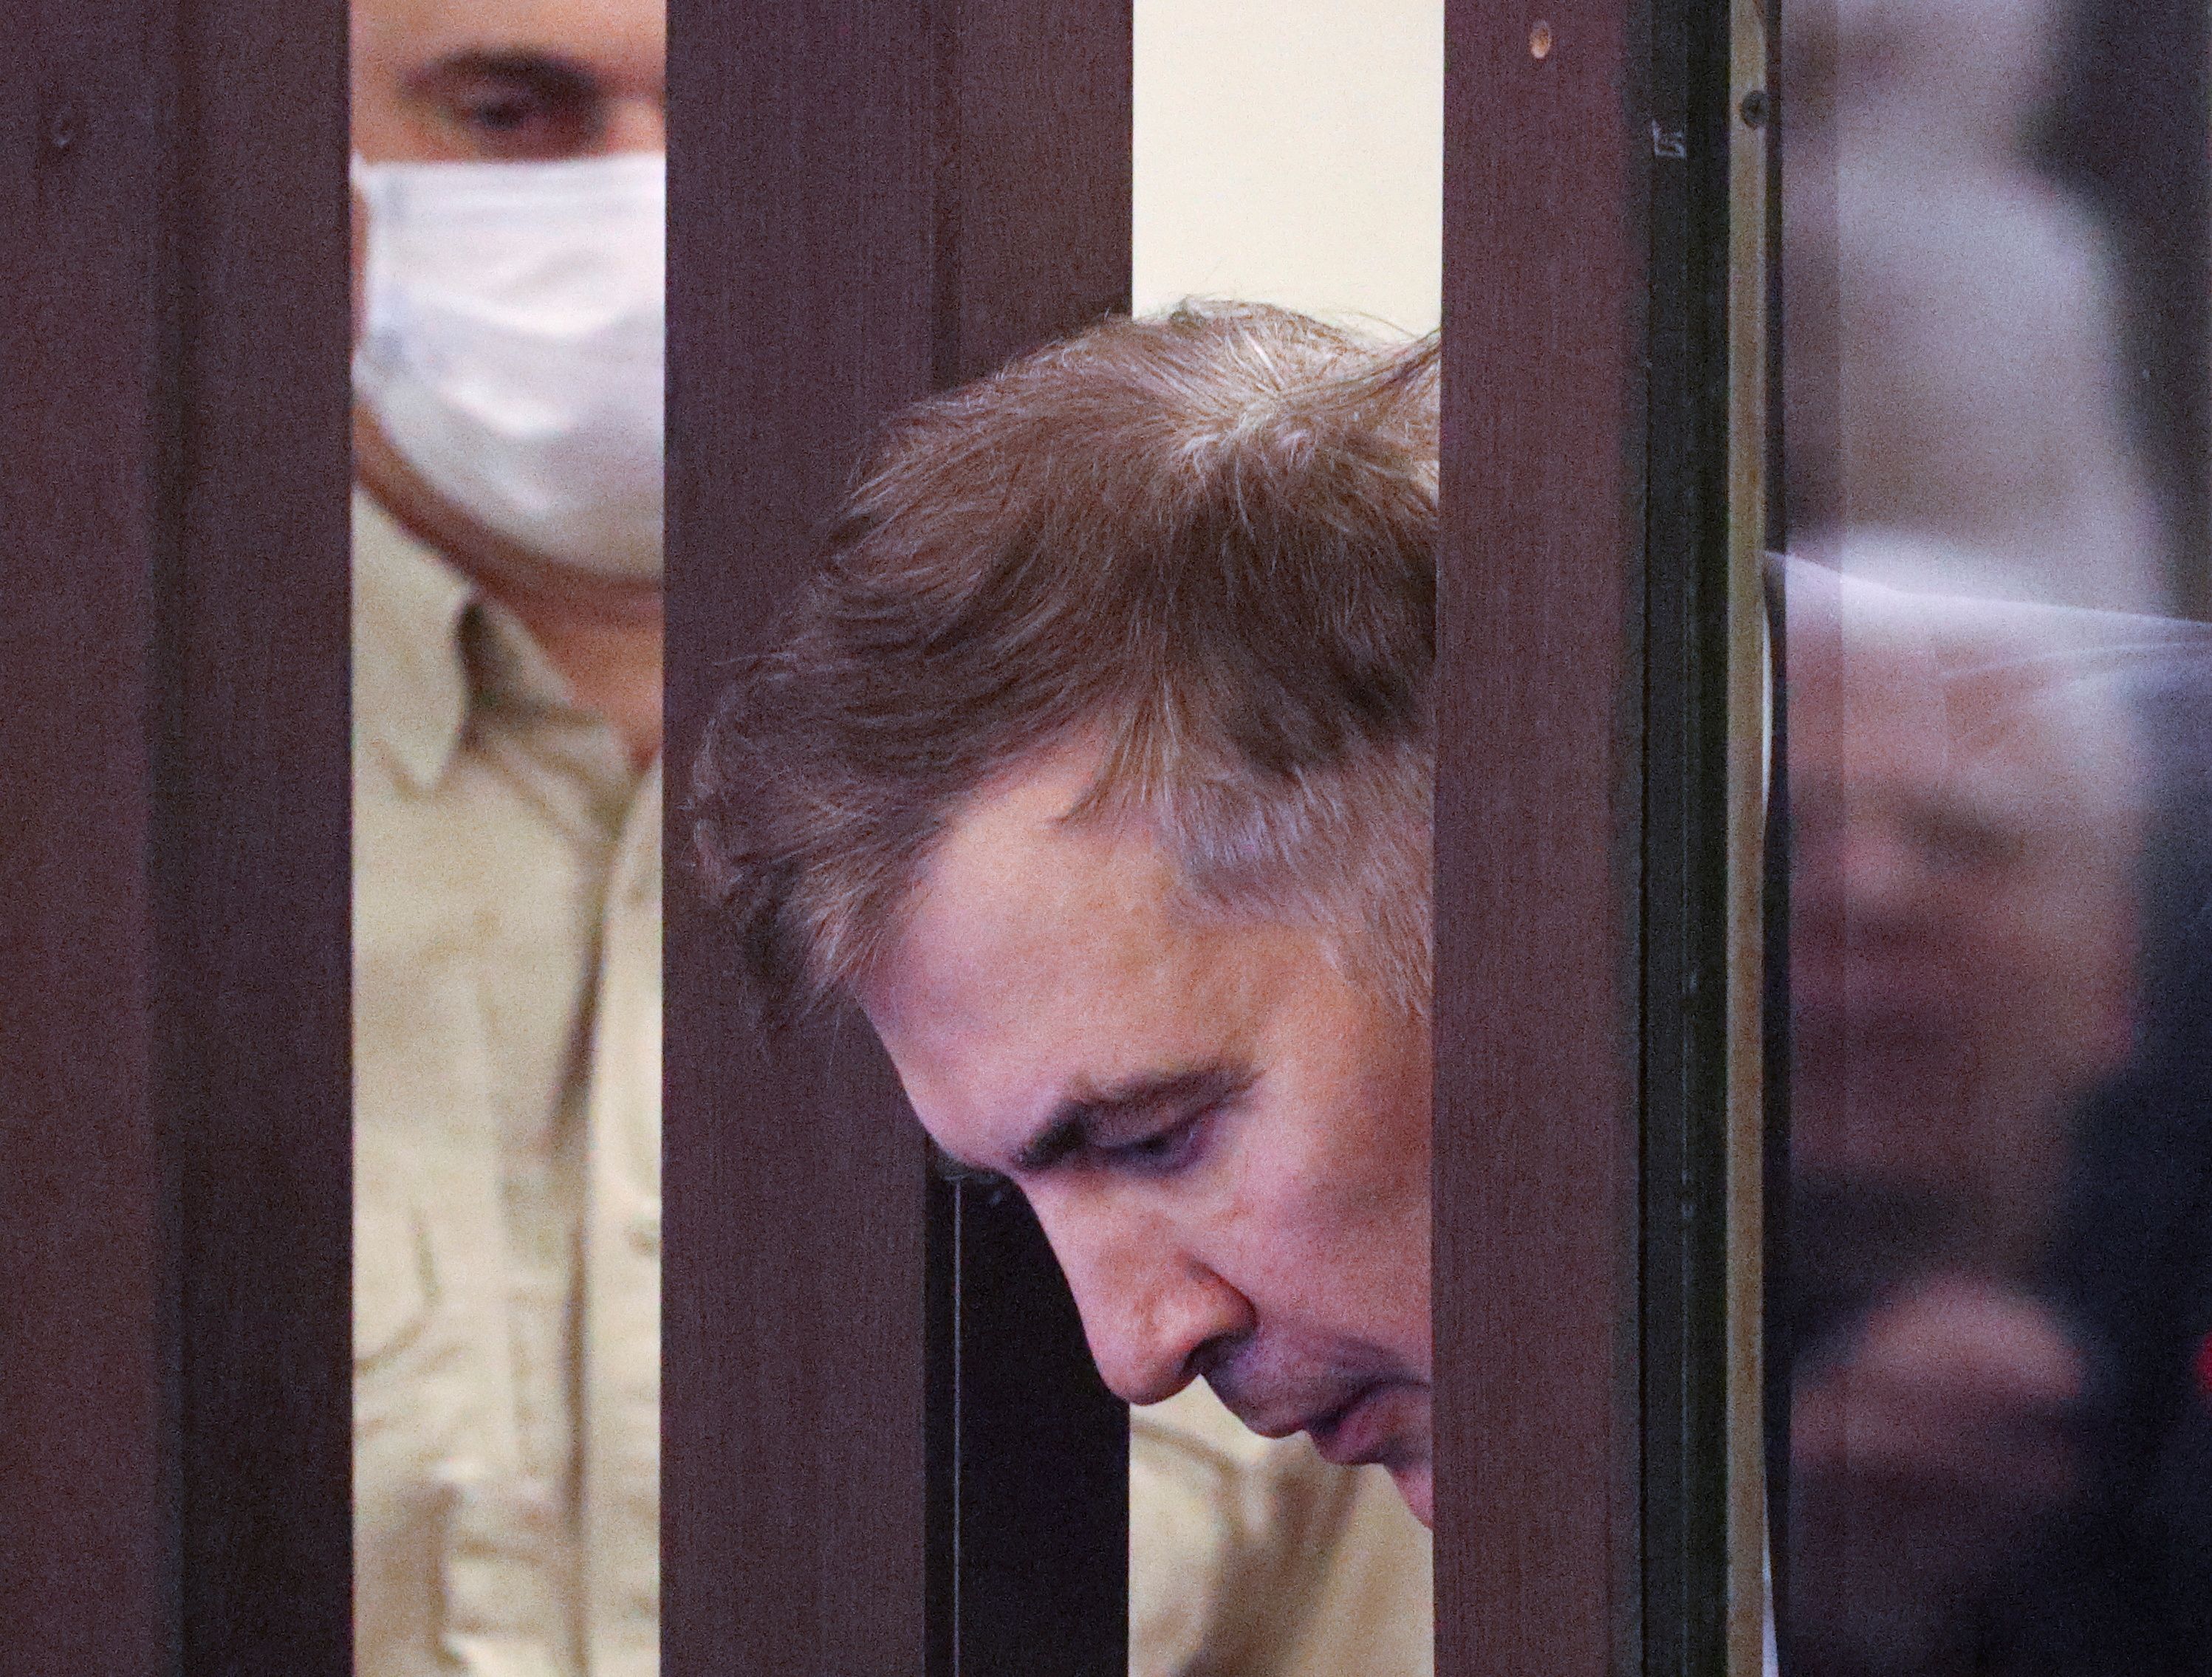 FOTO DE ARCHIVO: el expresidente georgiano Mikheil Saakashvili, condenado en rebeldía por abuso de poder durante su presidencia y detenido a su regreso del exilio, habla con sus abogados durante una vista judicial en Tiflis, Georgia, 2 de diciembre de 2021 (Reuters)